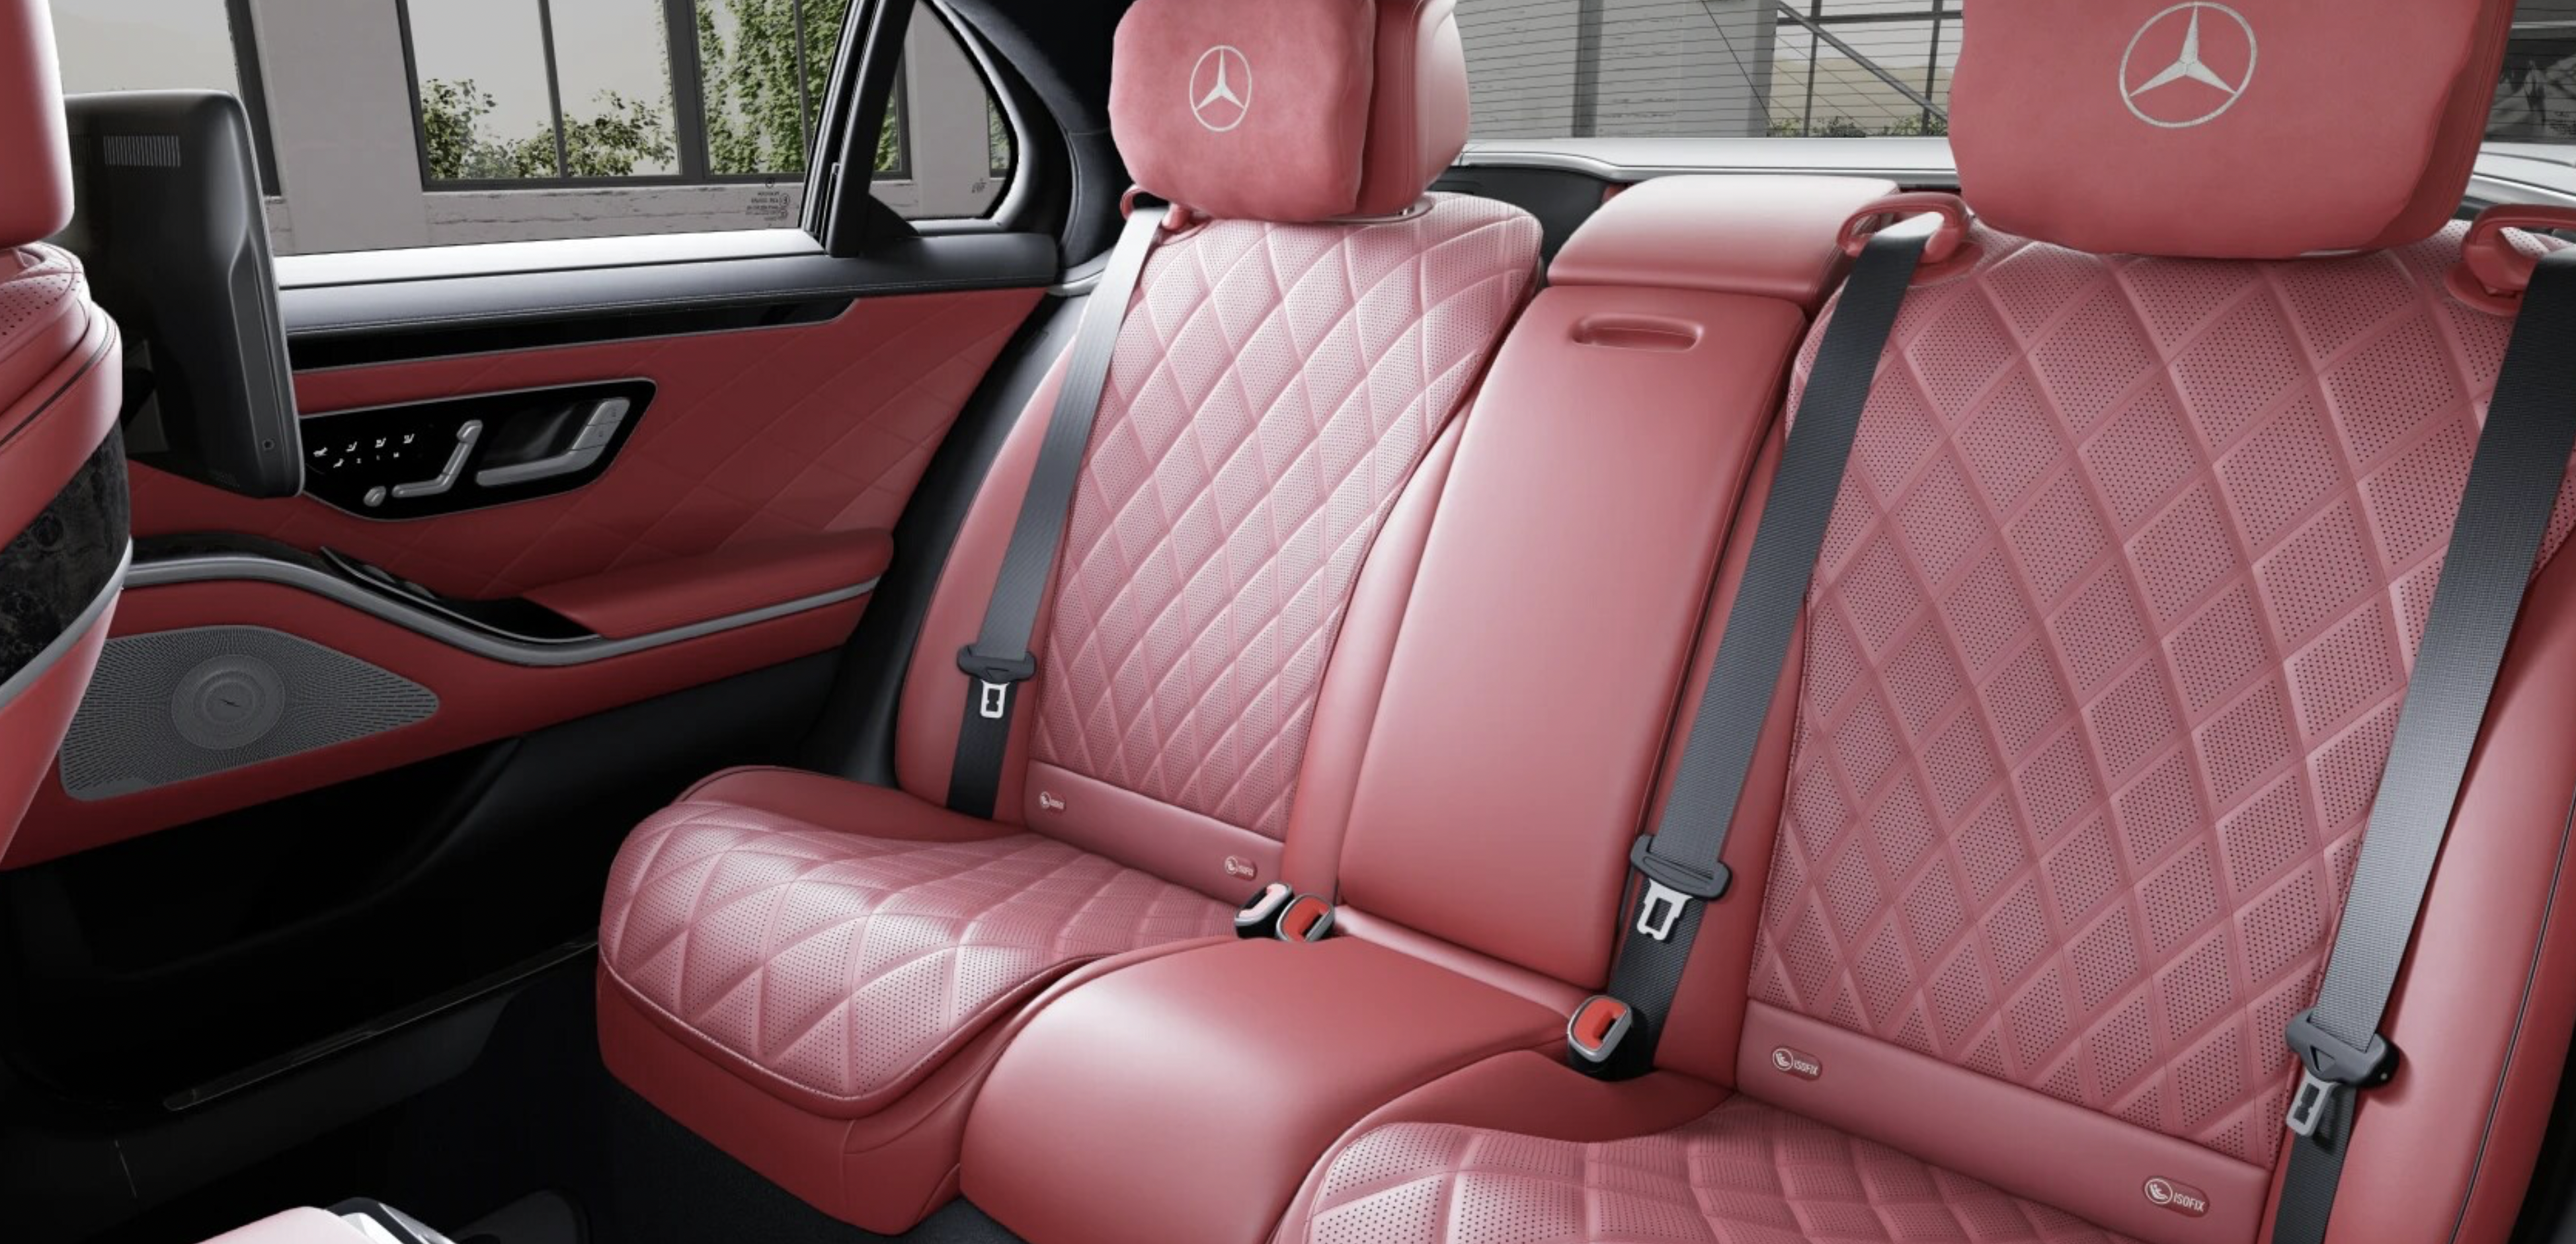 Mercedes S 400d 4matic AMG LONG | nové auto skladem | bílá s červenou kůží | luxusní edice MANUFAKTUR | maximální výbava | sleva 14% | výprodej skladu | nákup online | auto eshop AUTOiBUY.com